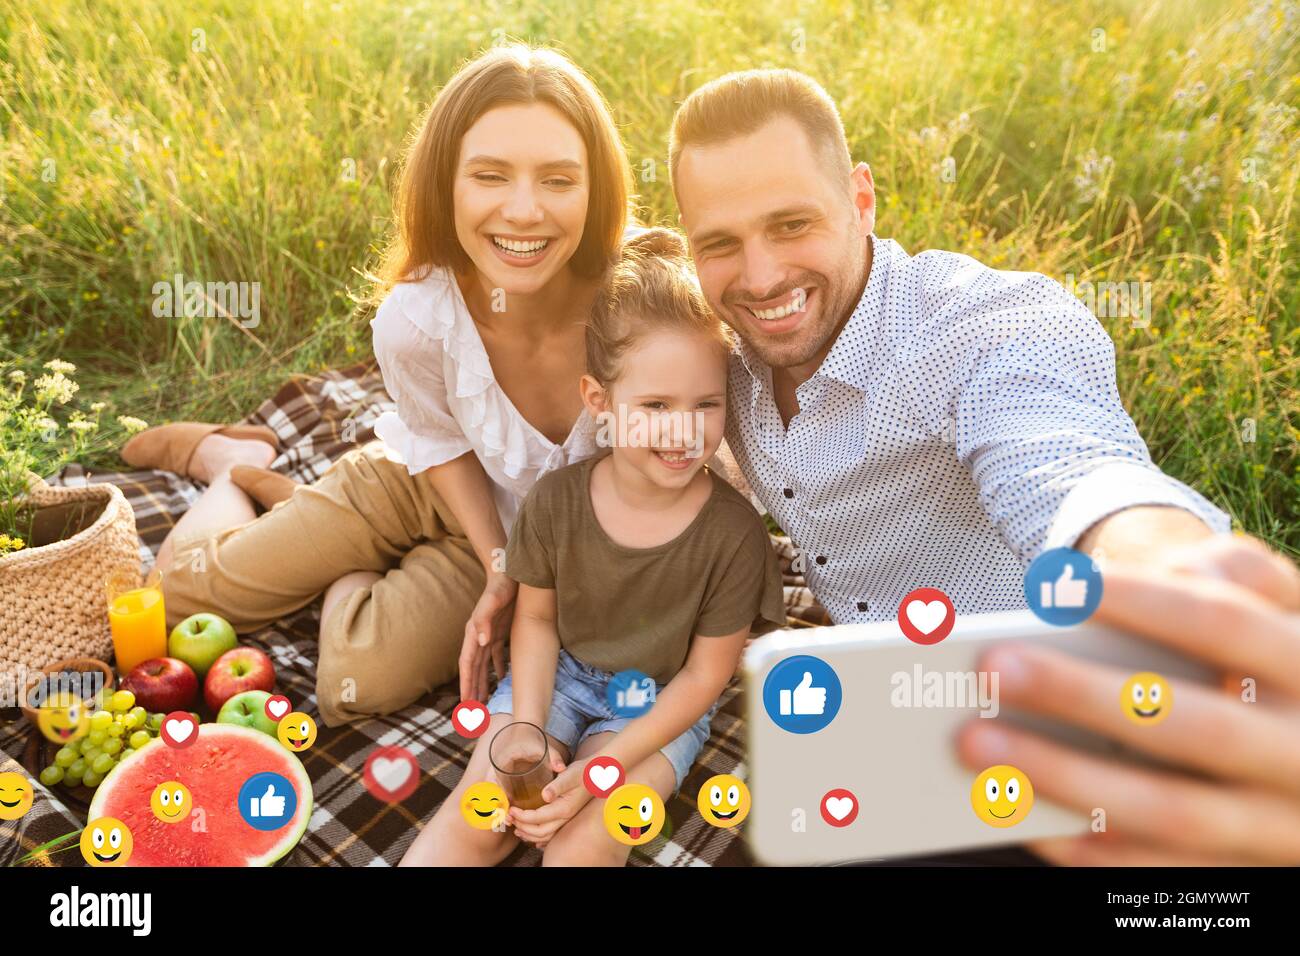 Fröhliche junge europäische Familie mit kleiner Tochter auf Picknick und Selfie für soziale Netzwerke im Freien Stockfoto